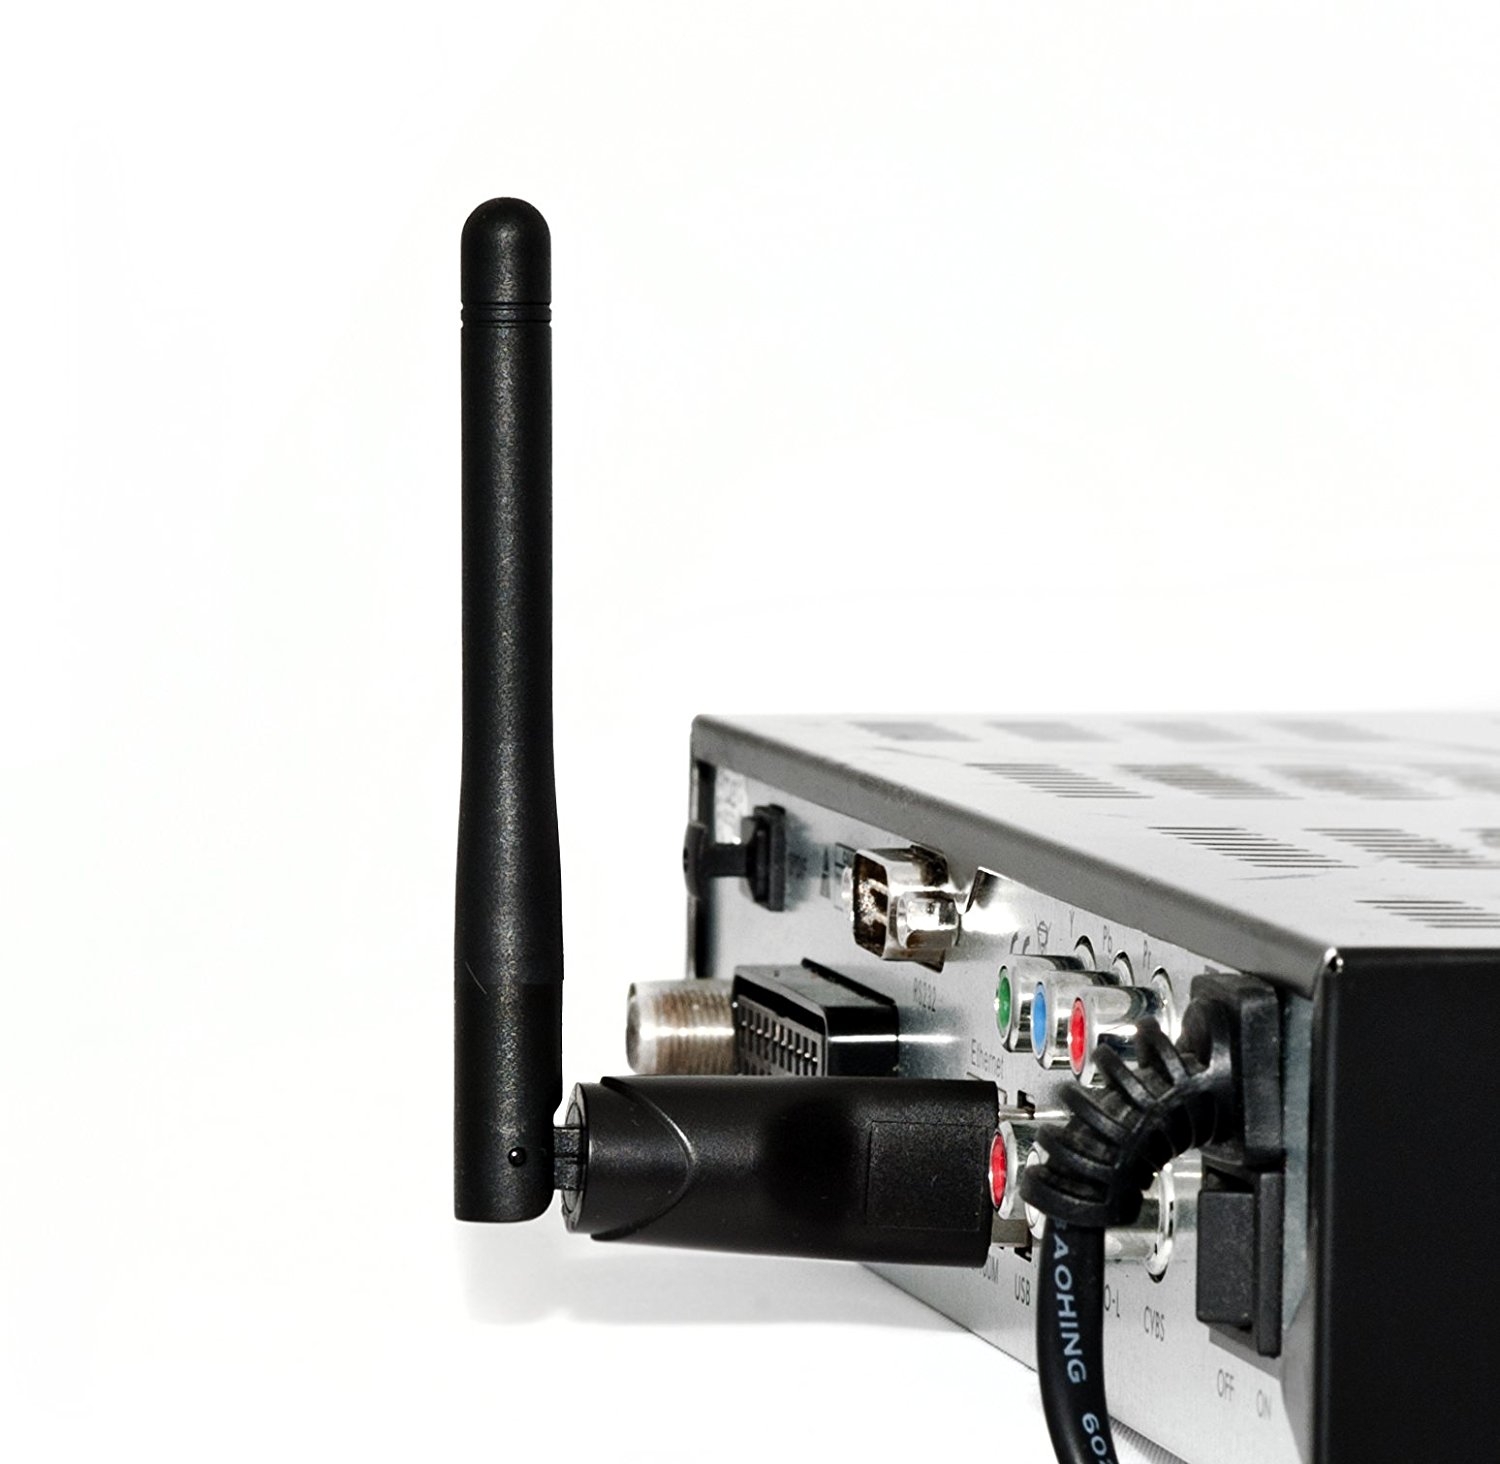 Ferguson W03 Wifi USB Wlan Stick mit Antenne 802.11 B/G/N